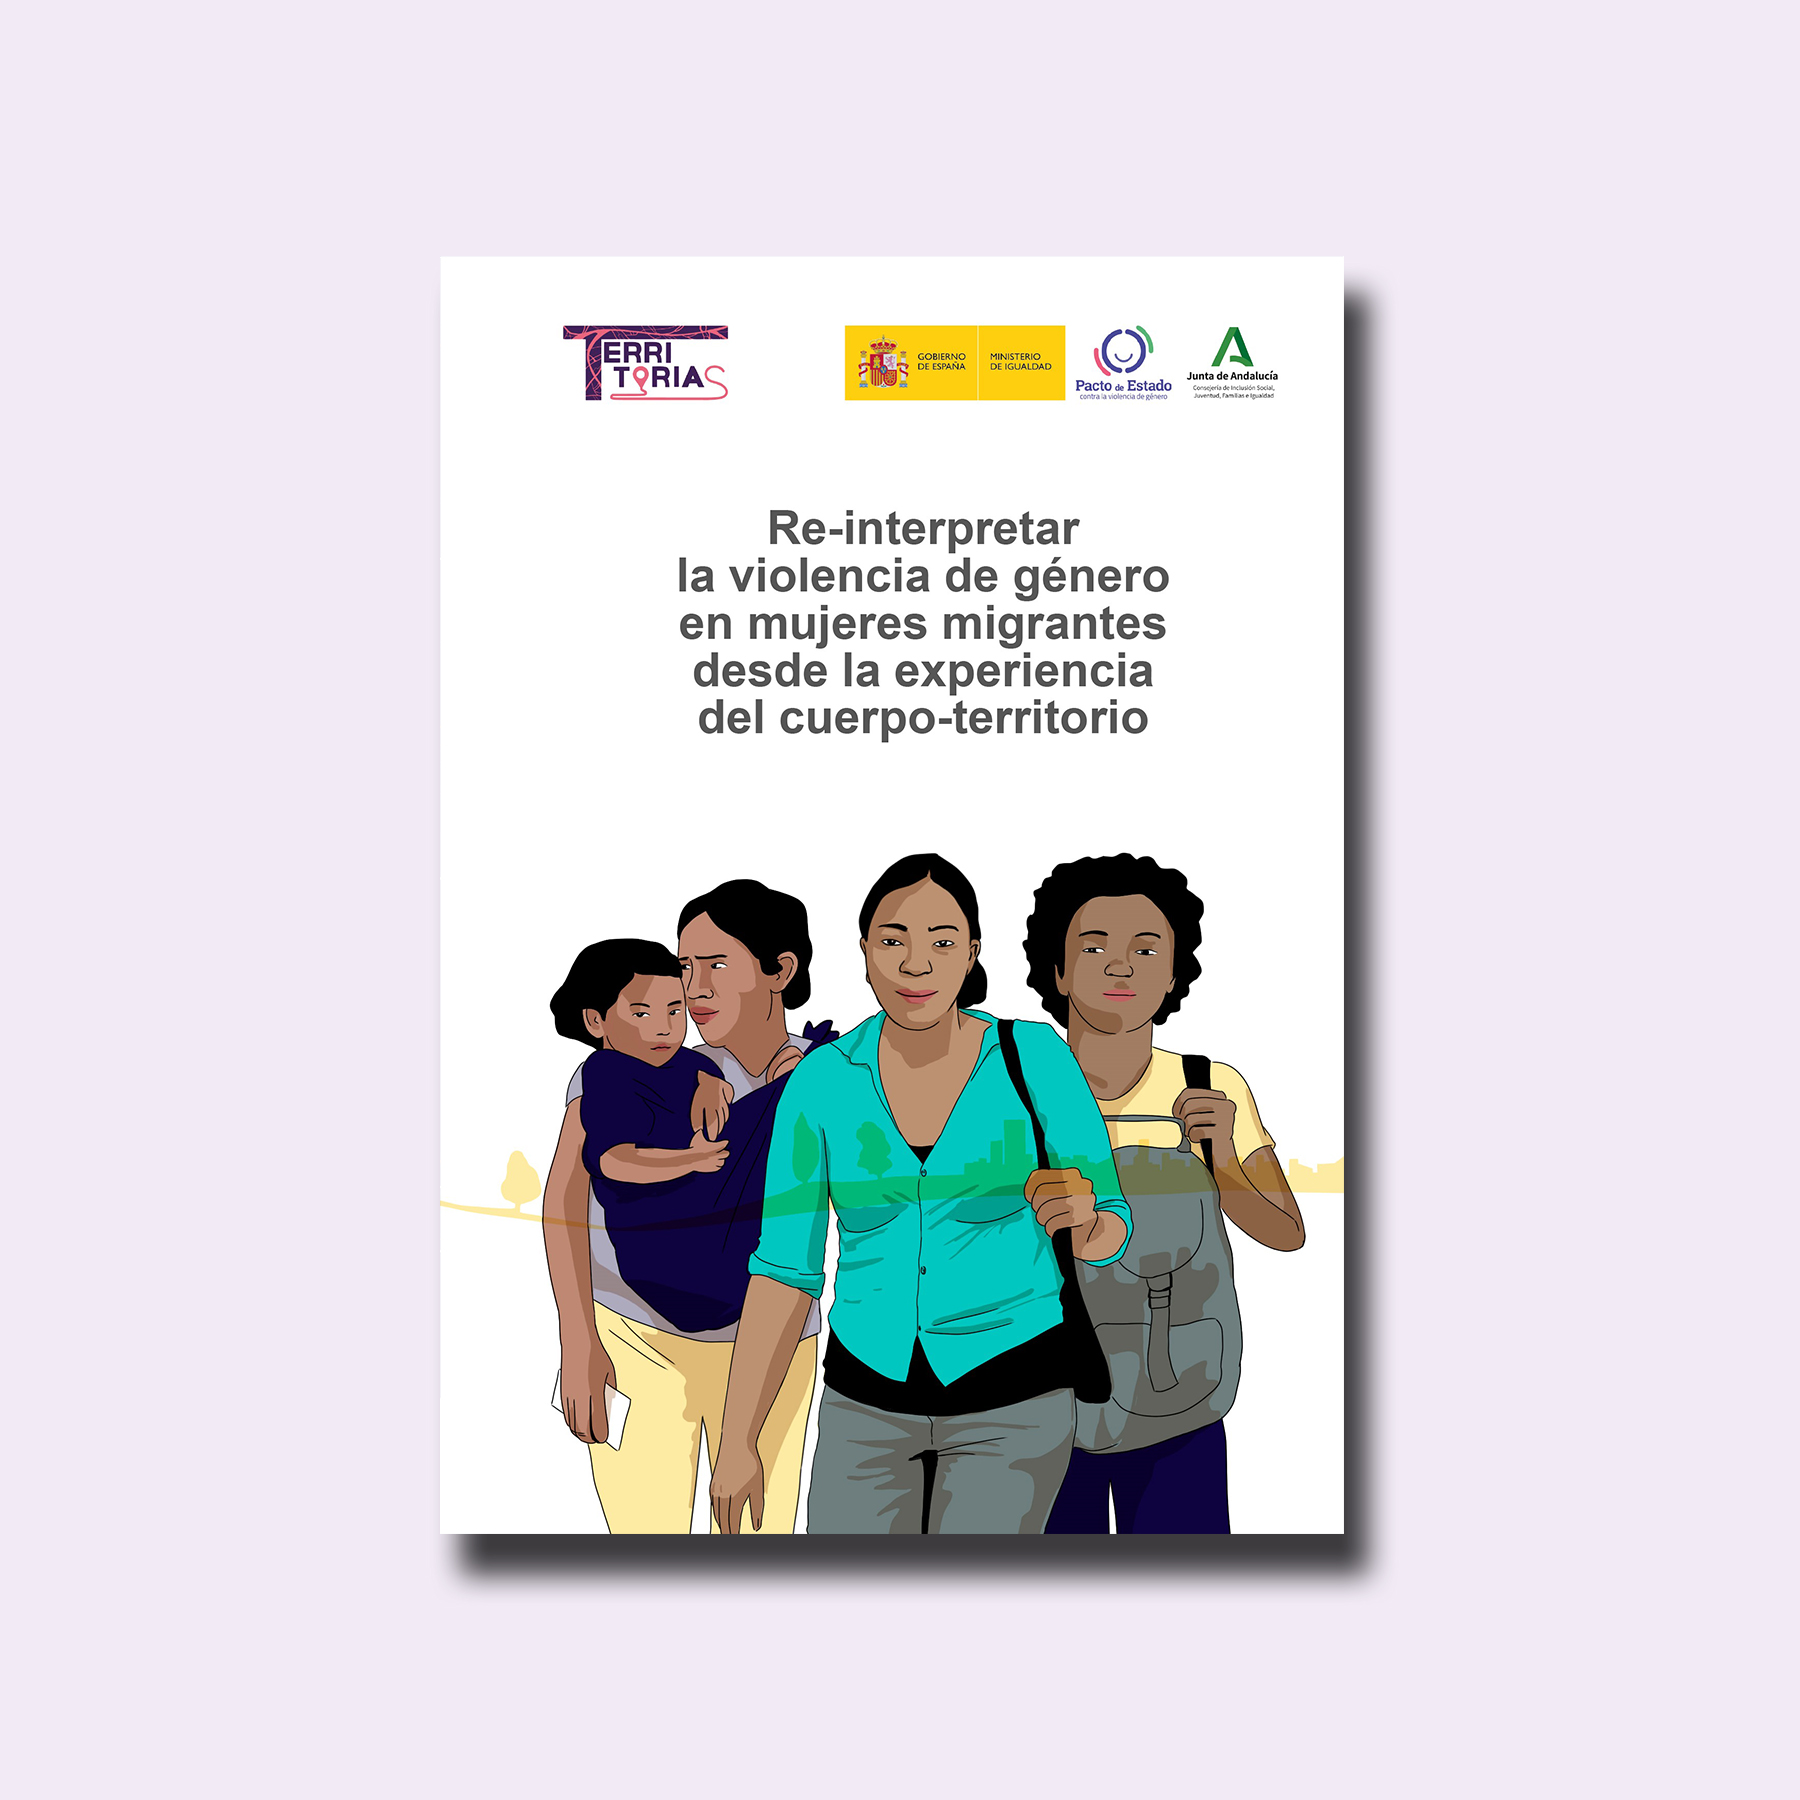 “Re-interpretar la violencia de género en mujeres migrantes desde la experiencia del cuerpo-territorio”